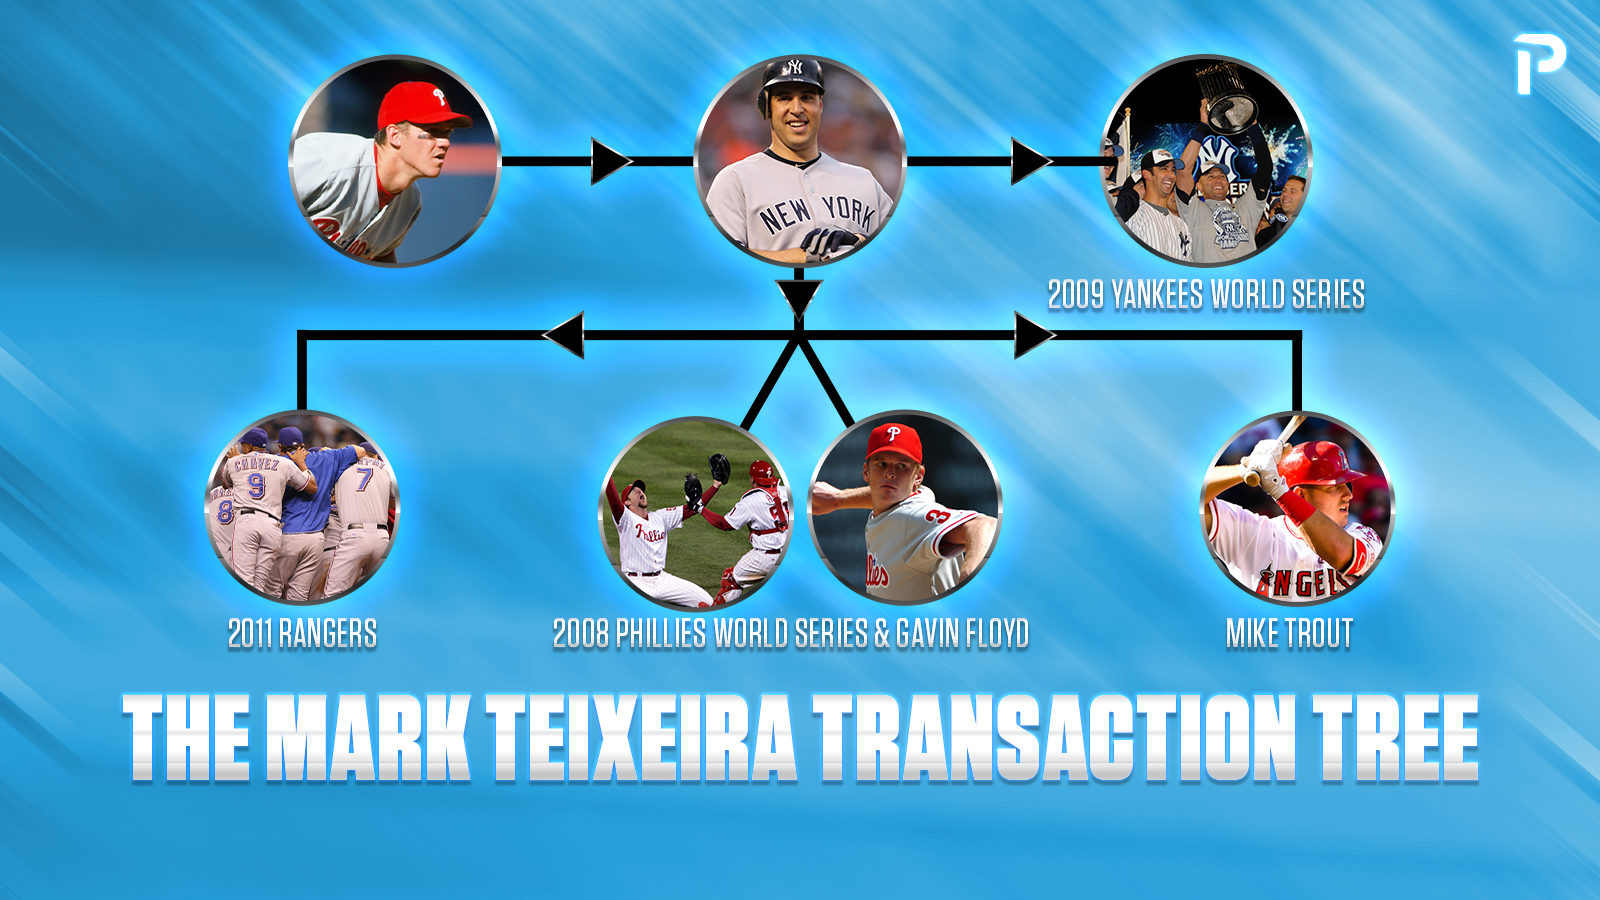 The Teixeira Transaction Tree